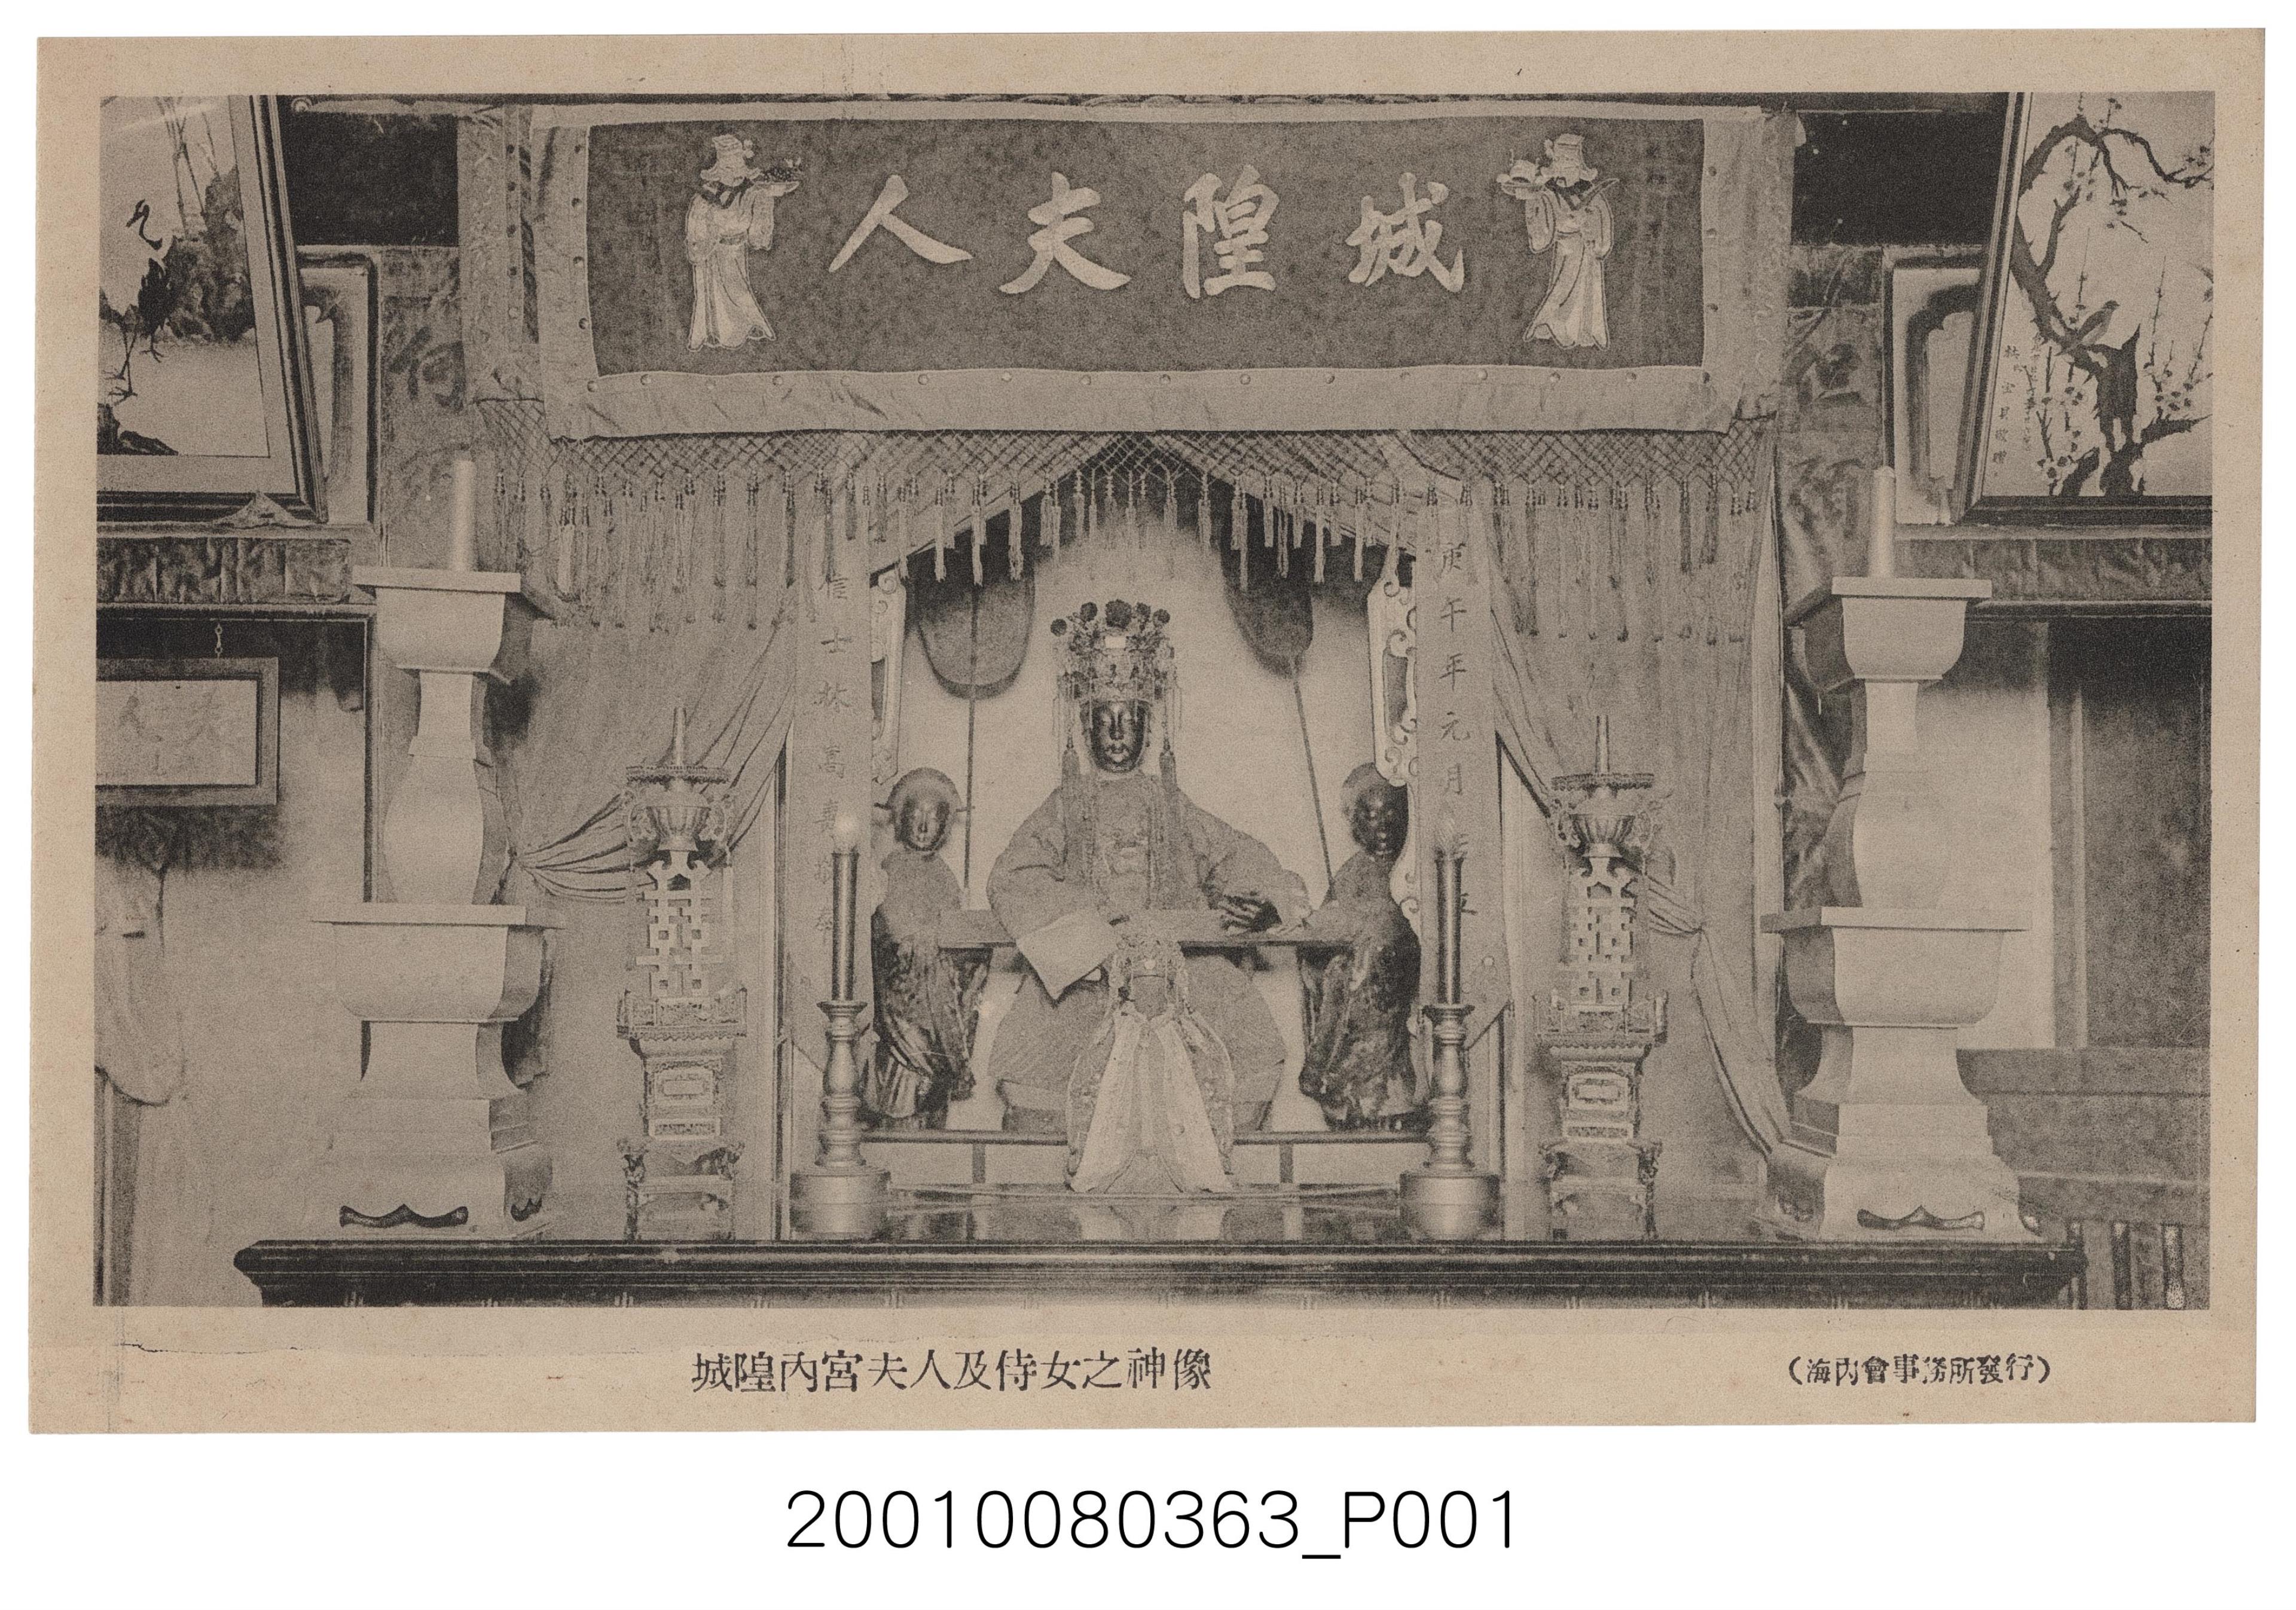 海內會事務所發行臺北霞海城隍廟城隍夫人及侍女之神像 (共2張)